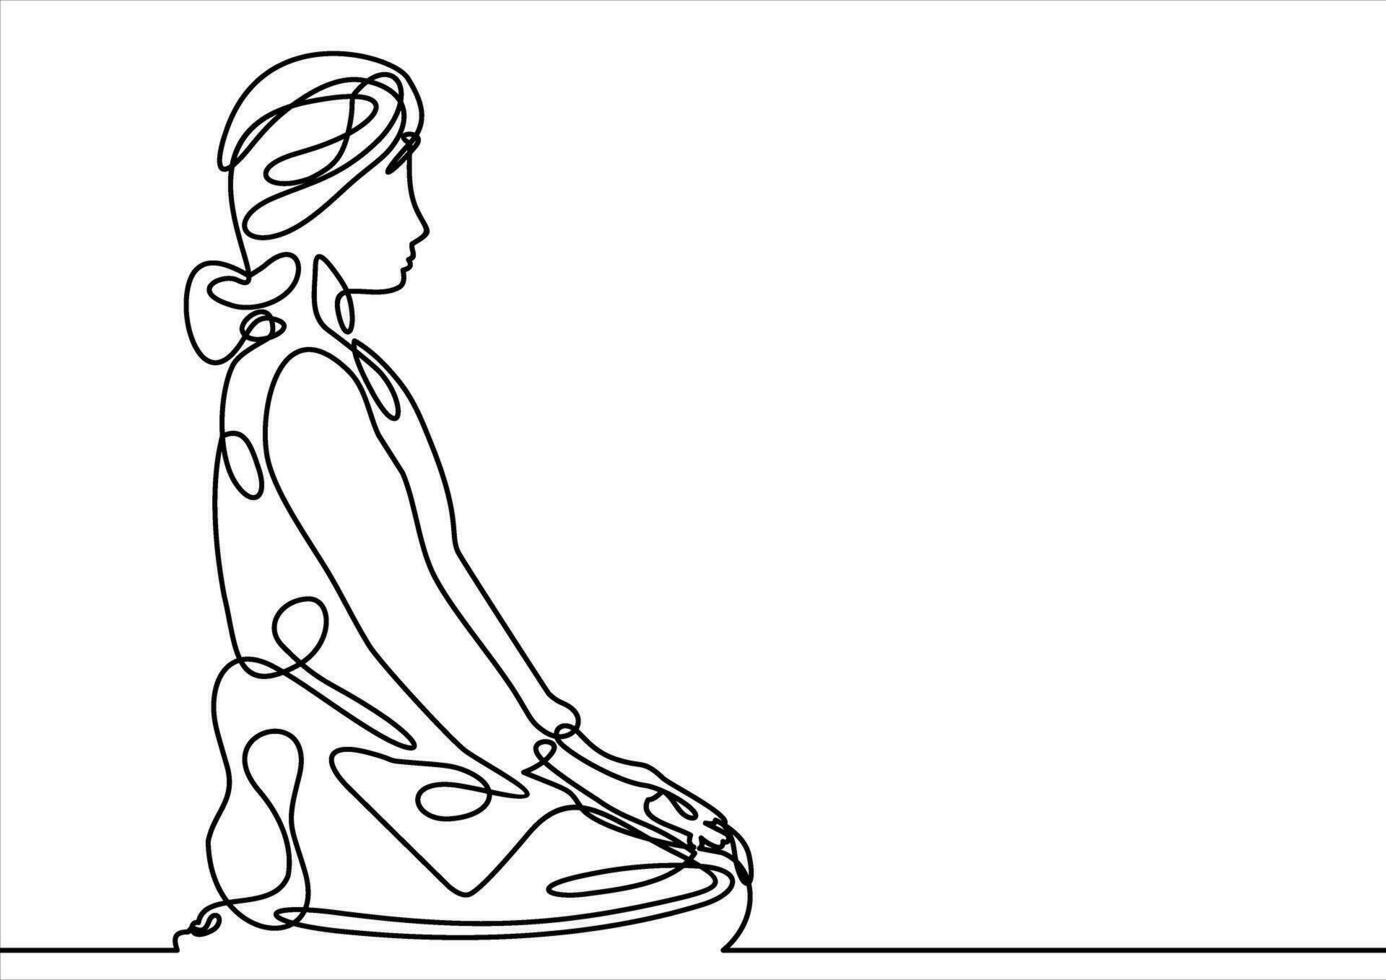 kvinna praktiserande yoga-kontinuerlig linje teckning vektor